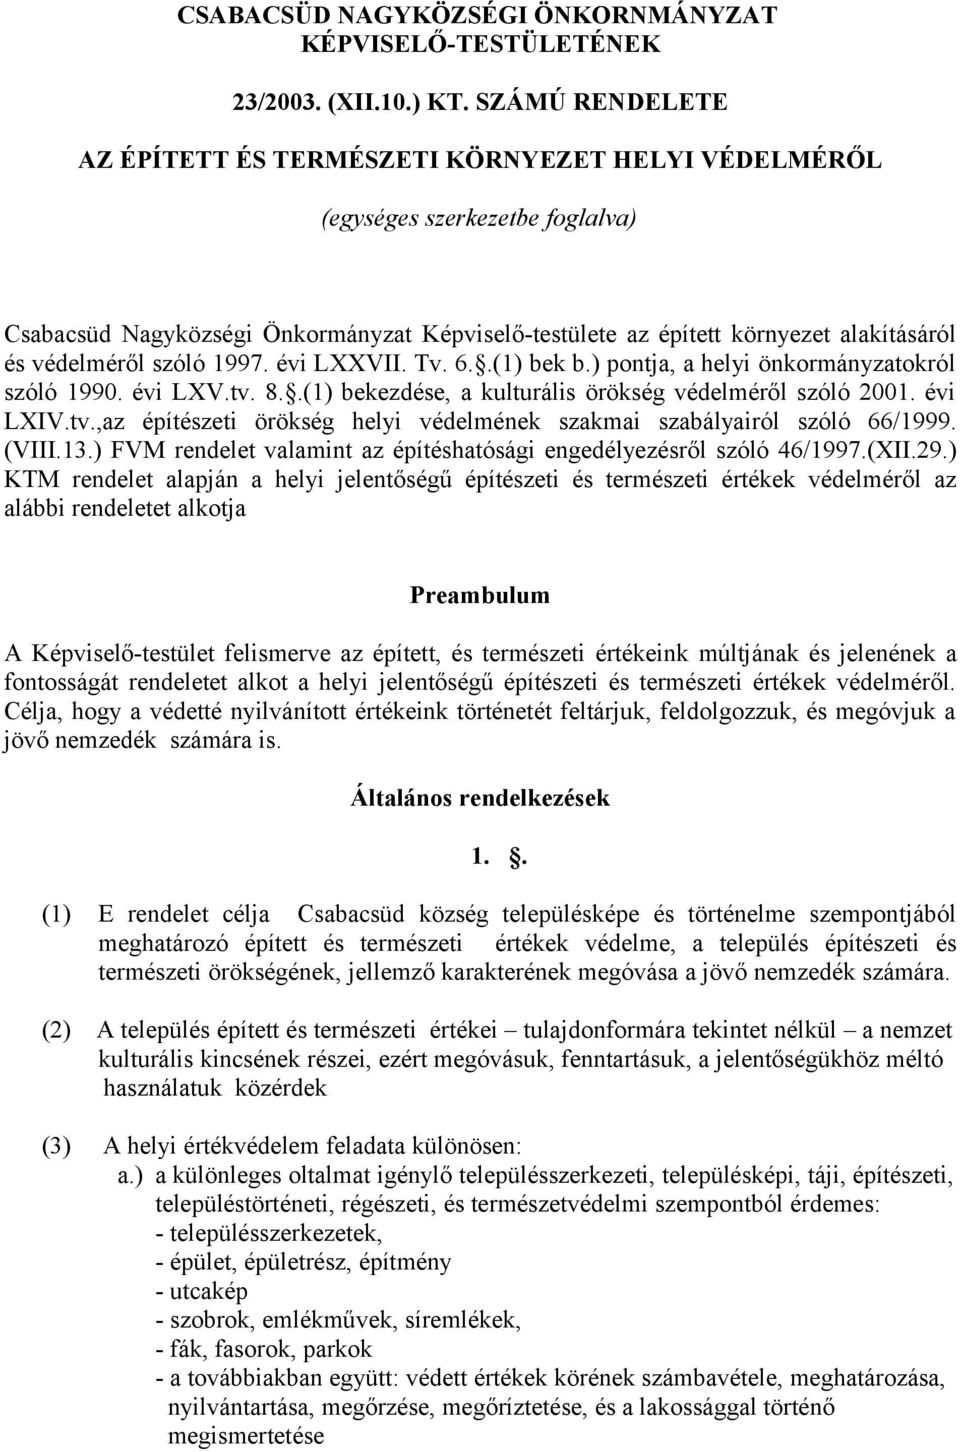 védelméről szóló 1997. évi LXXVII. Tv. 6..(1) bek b.) pontja, a helyi önkormányzatokról szóló 1990. évi LXV.tv. 8..(1) bekezdése, a kulturális örökség védelméről szóló 2001. évi LXIV.tv.,az építészeti örökség helyi védelmének szakmai szabályairól szóló 66/1999.